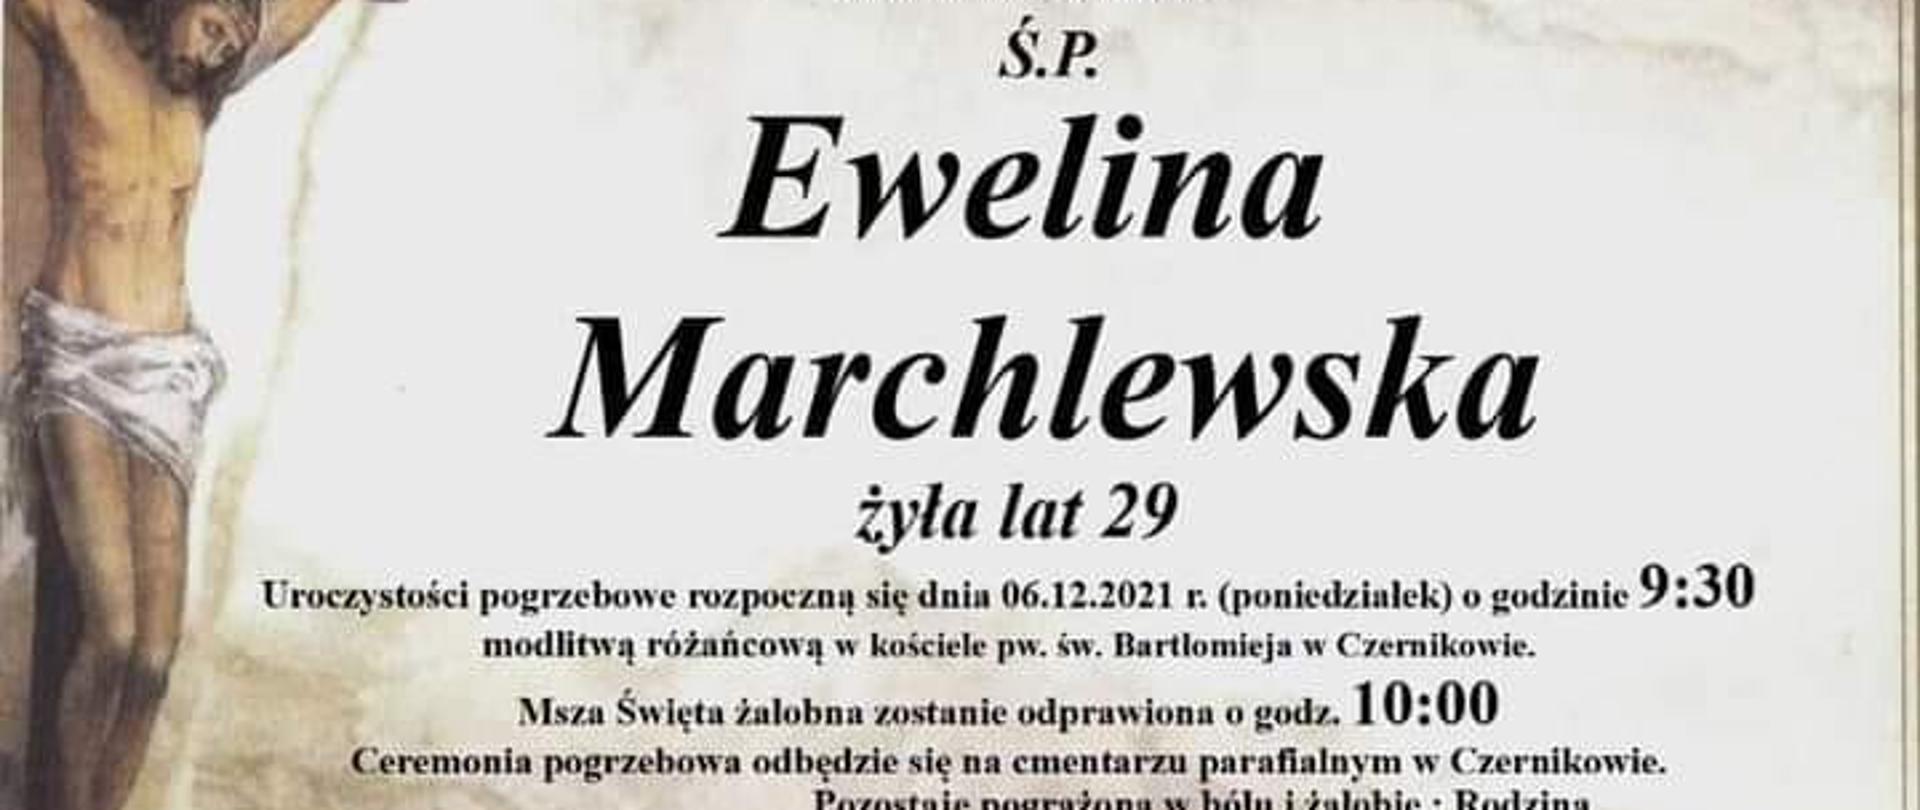 Treść nekrologu świętej pamięci Eweliny Marchlewskiej